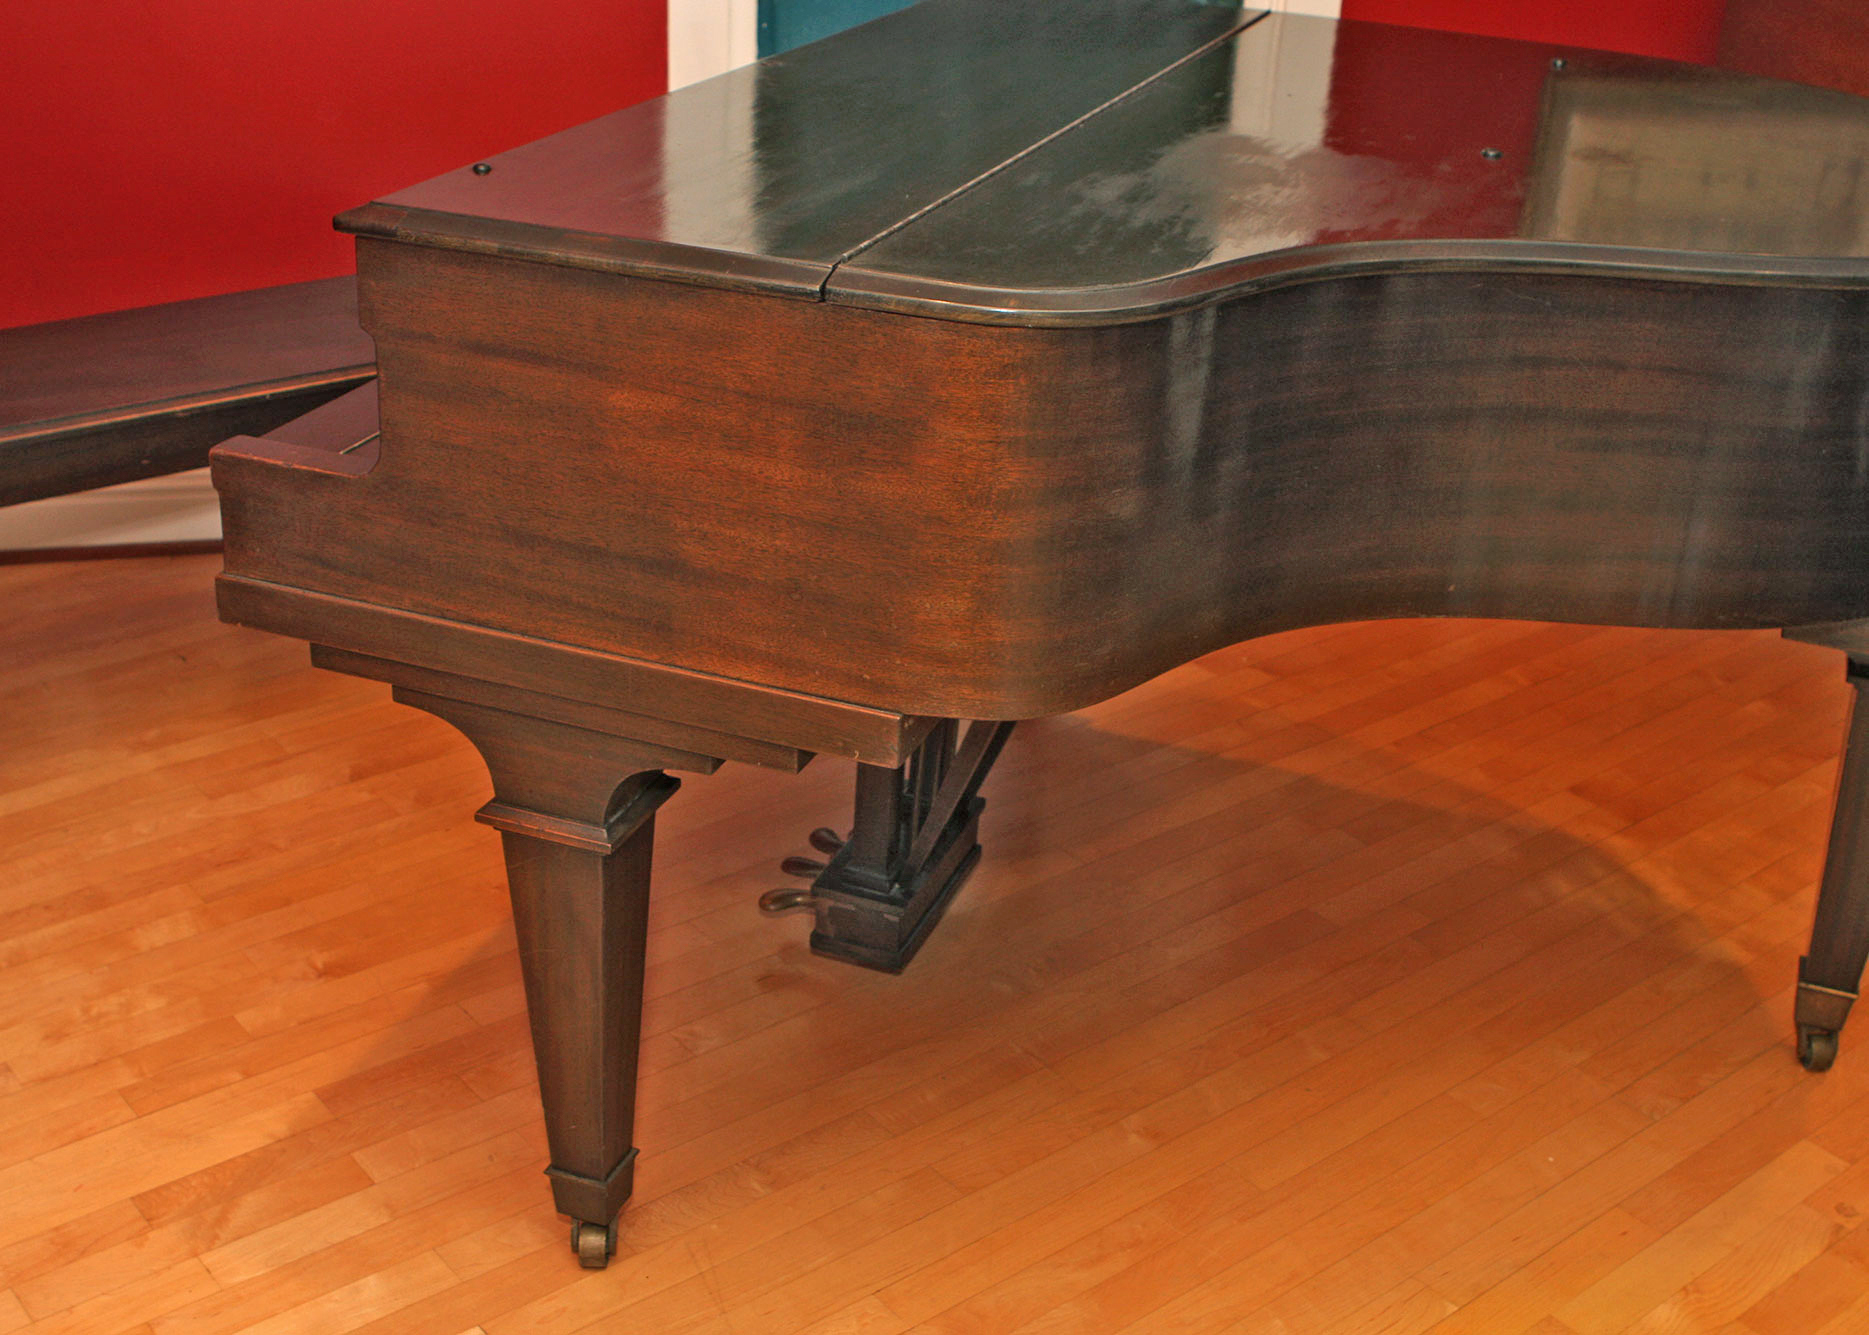 1921 kimball baby grand piano